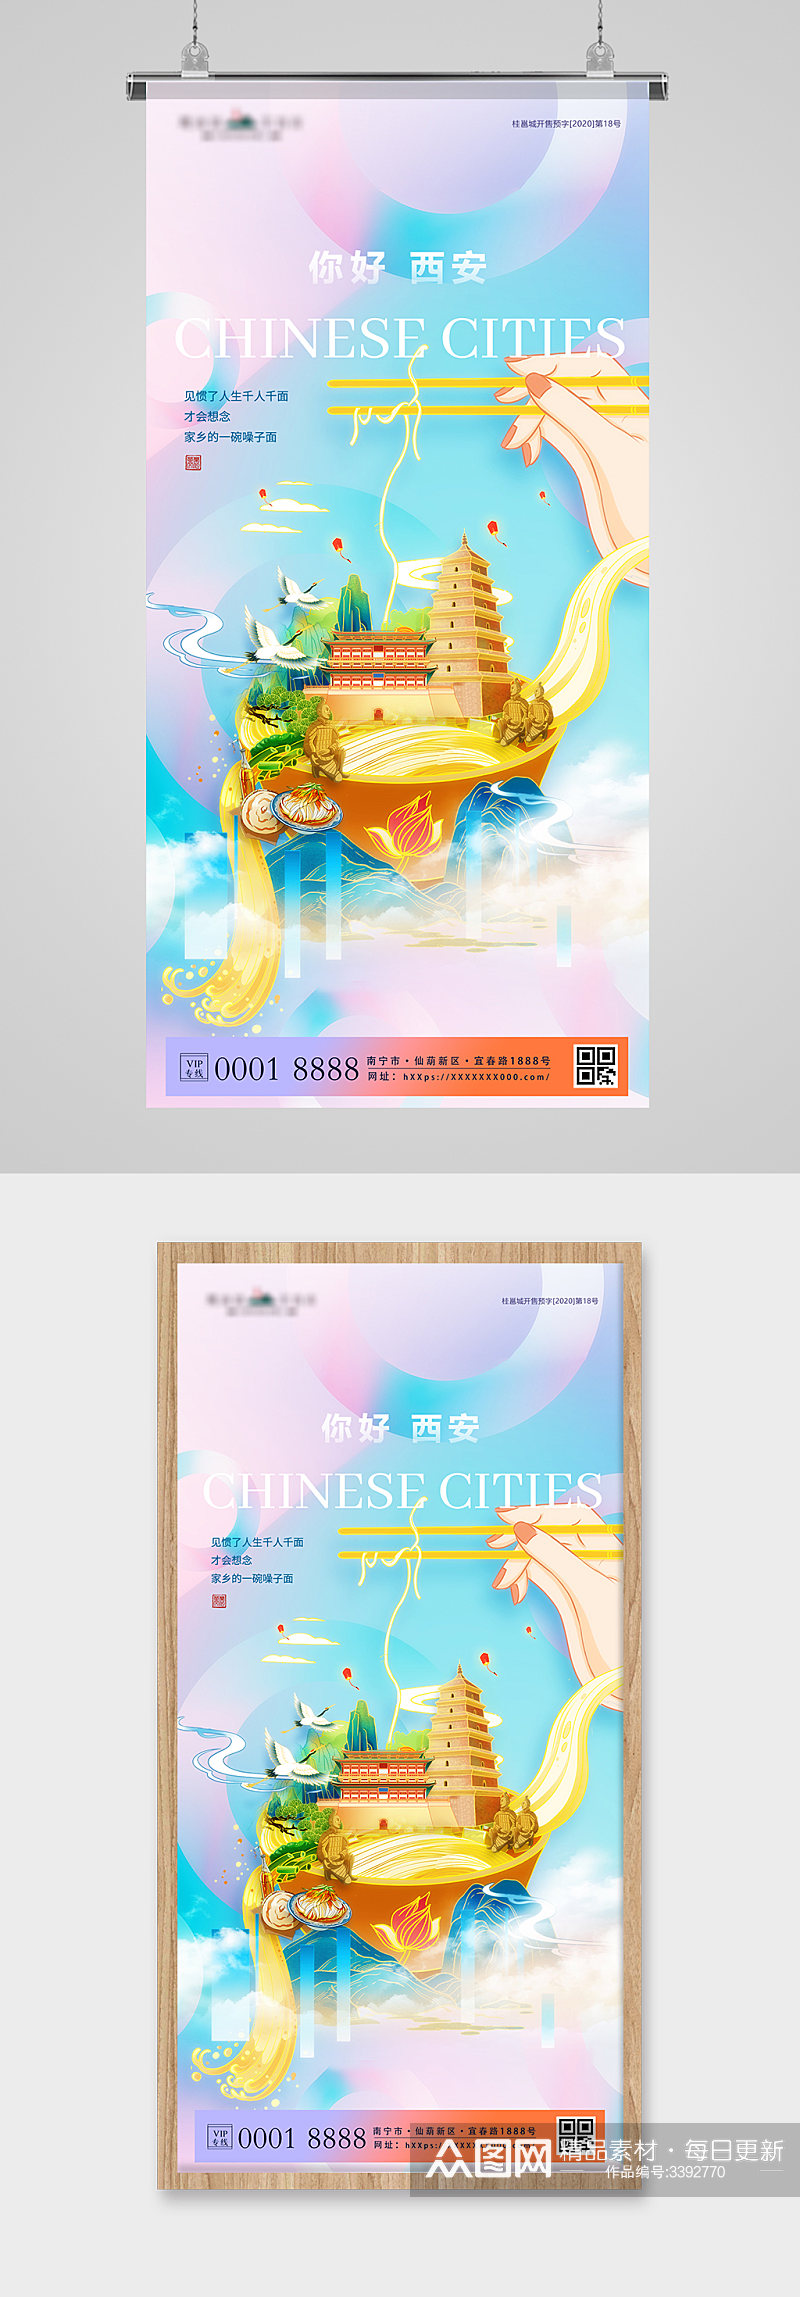 旅游城市西安炫彩插画宣传海报素材